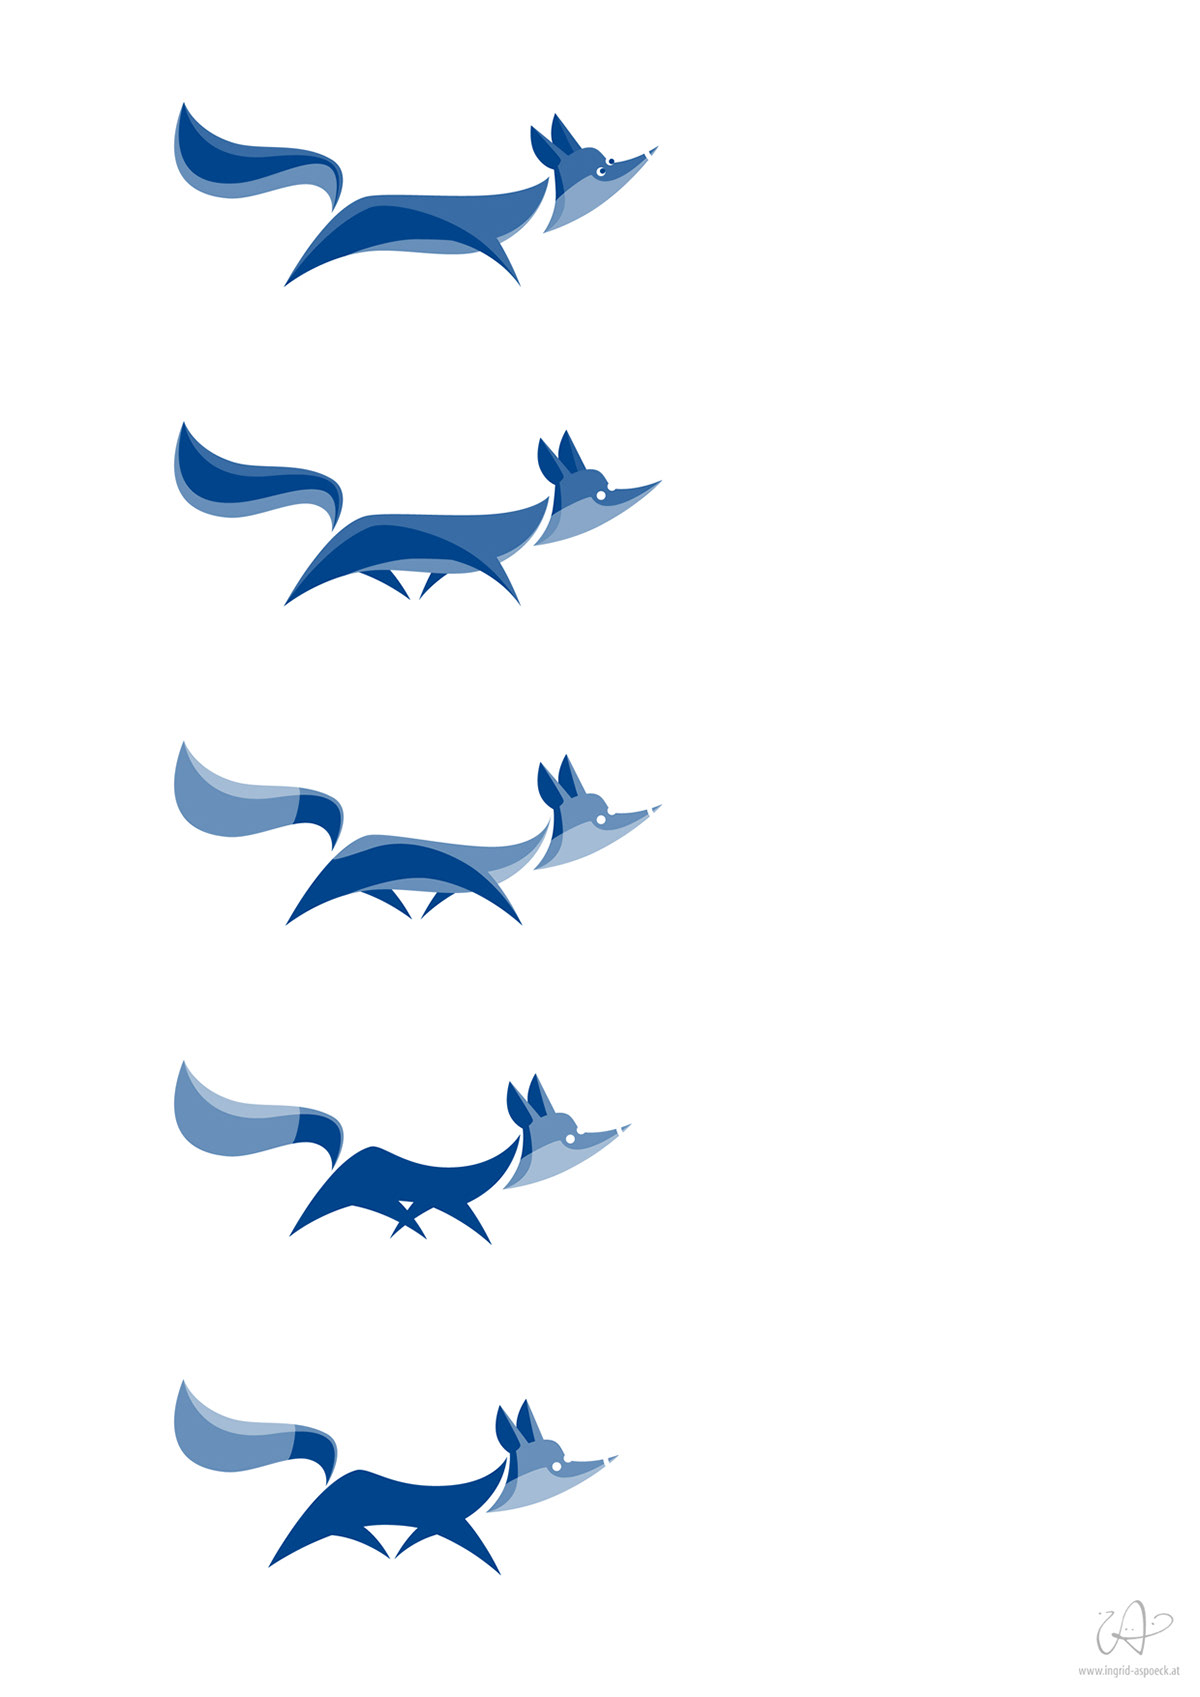 FOX logo vector design